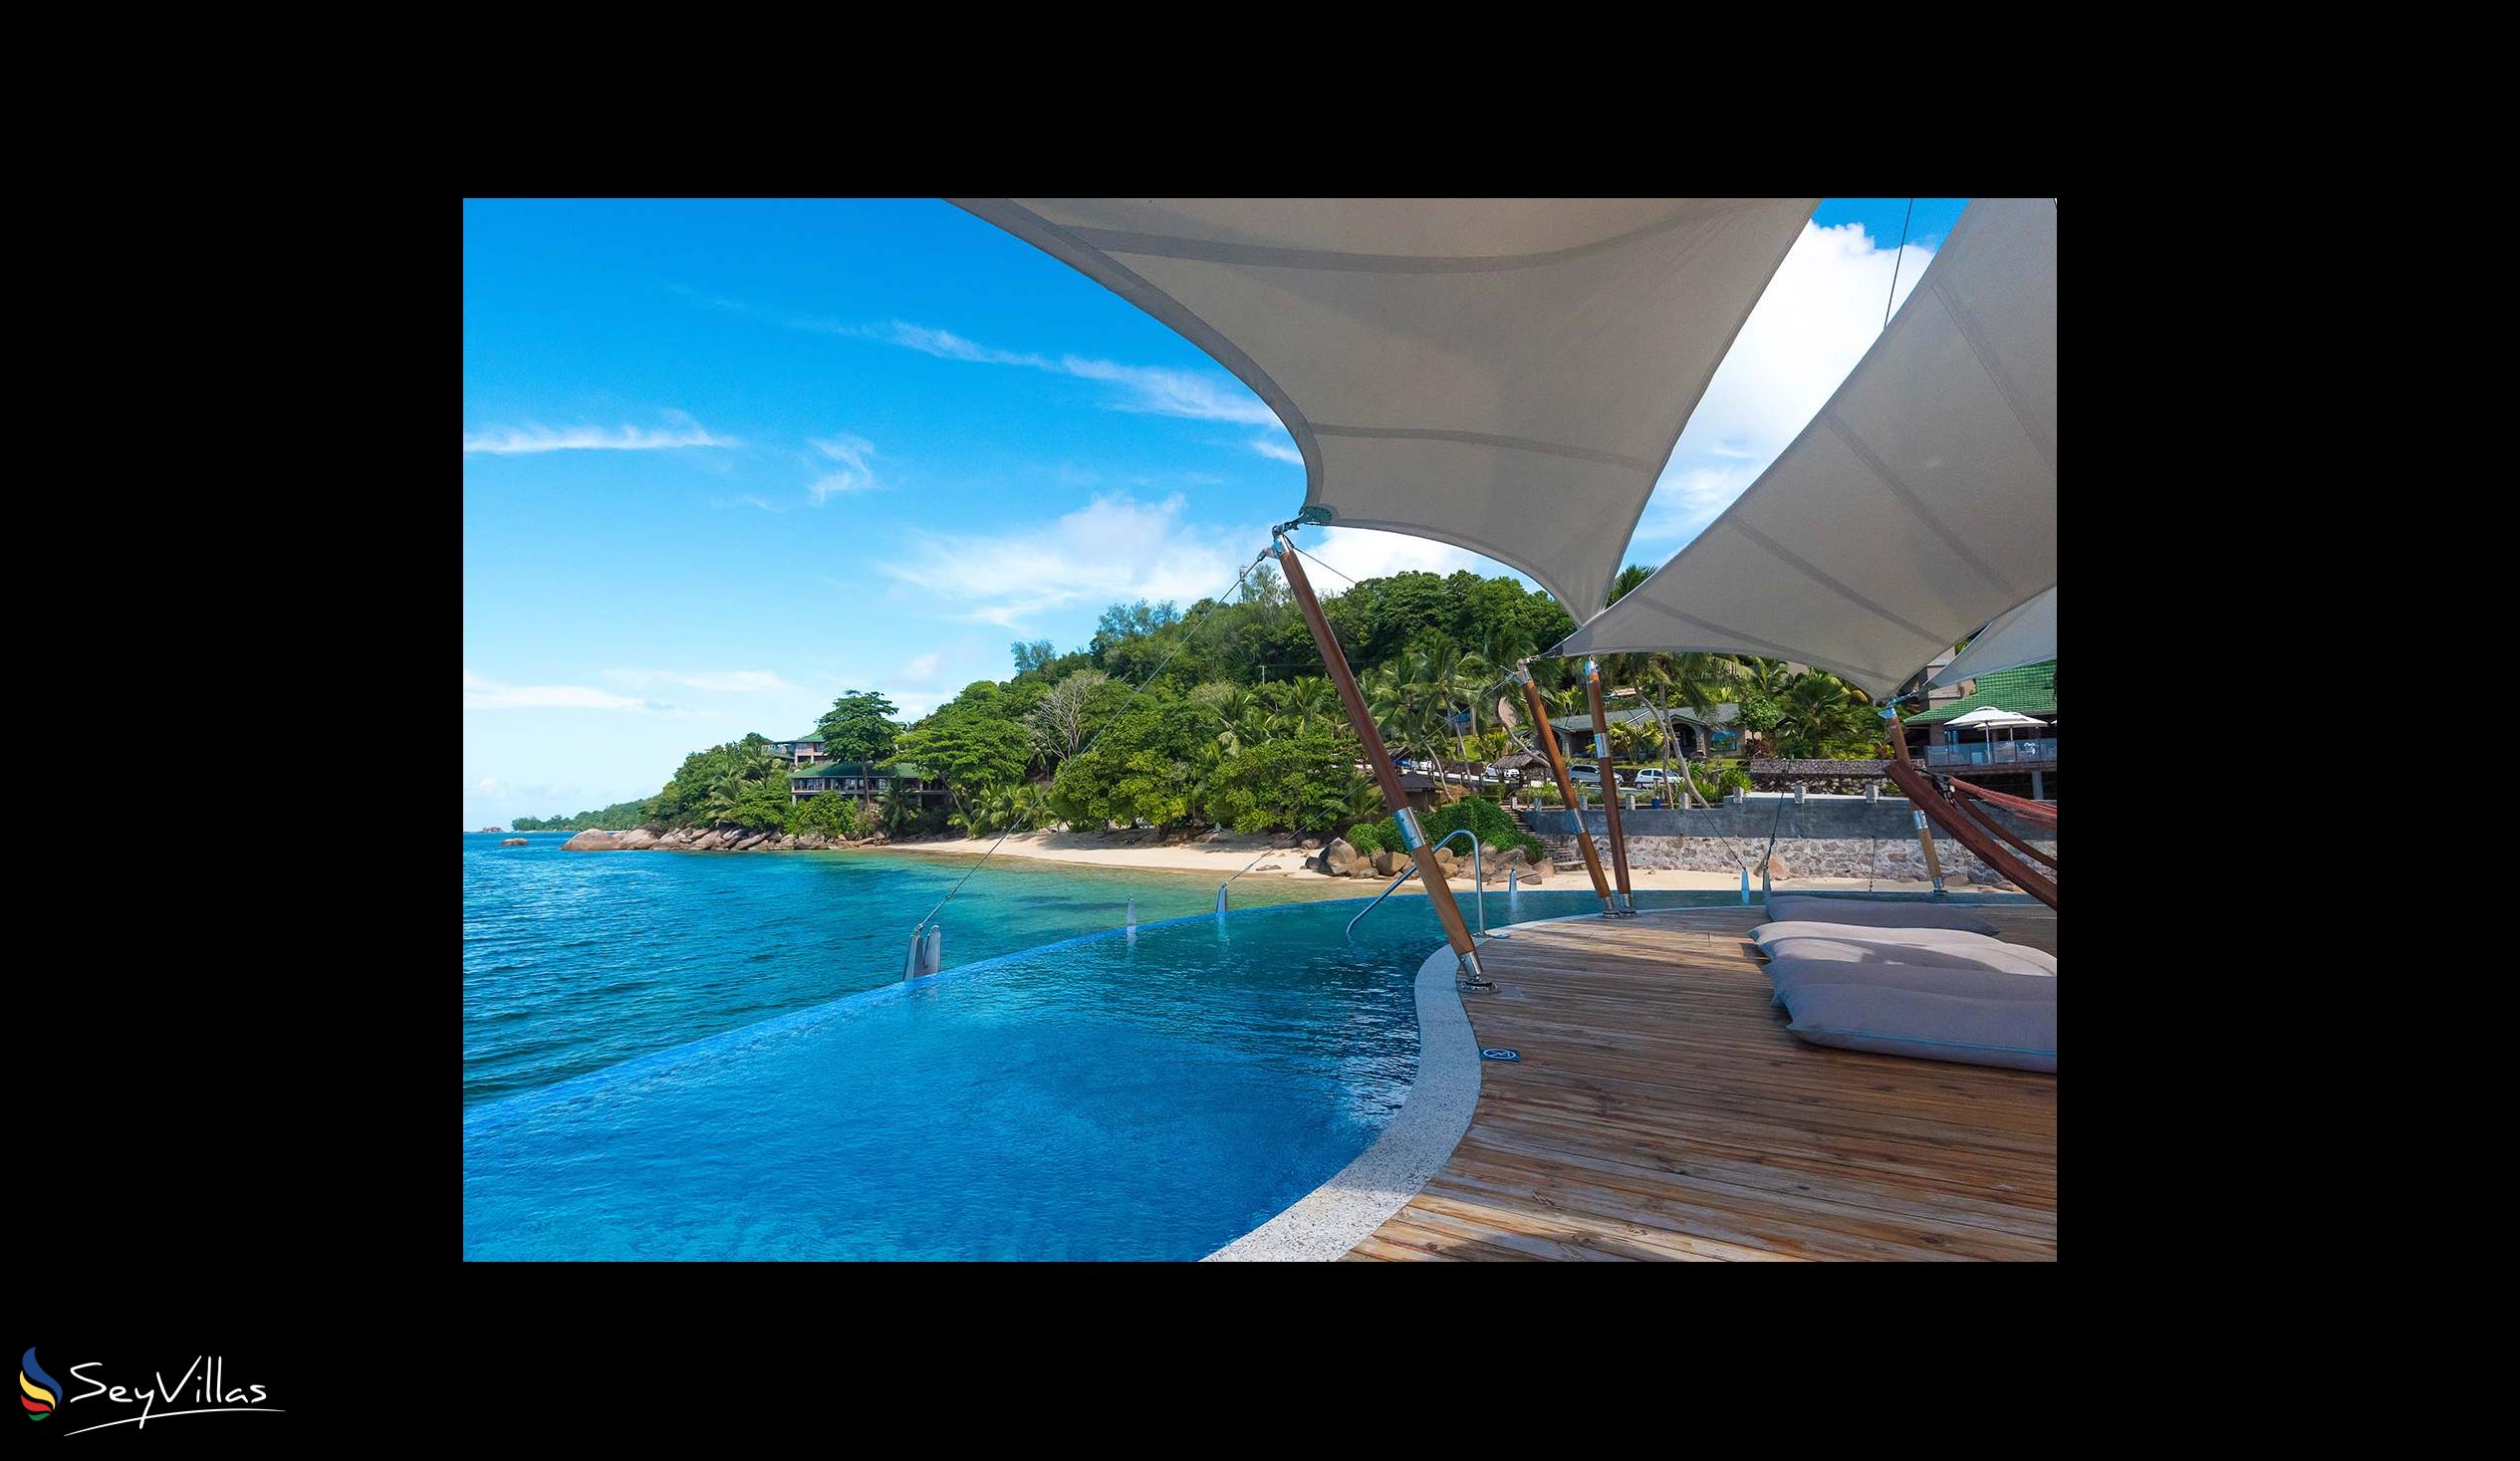 Foto 8: Coco de Mer & Black Parrot Suites - Aussenbereich - Praslin (Seychellen)